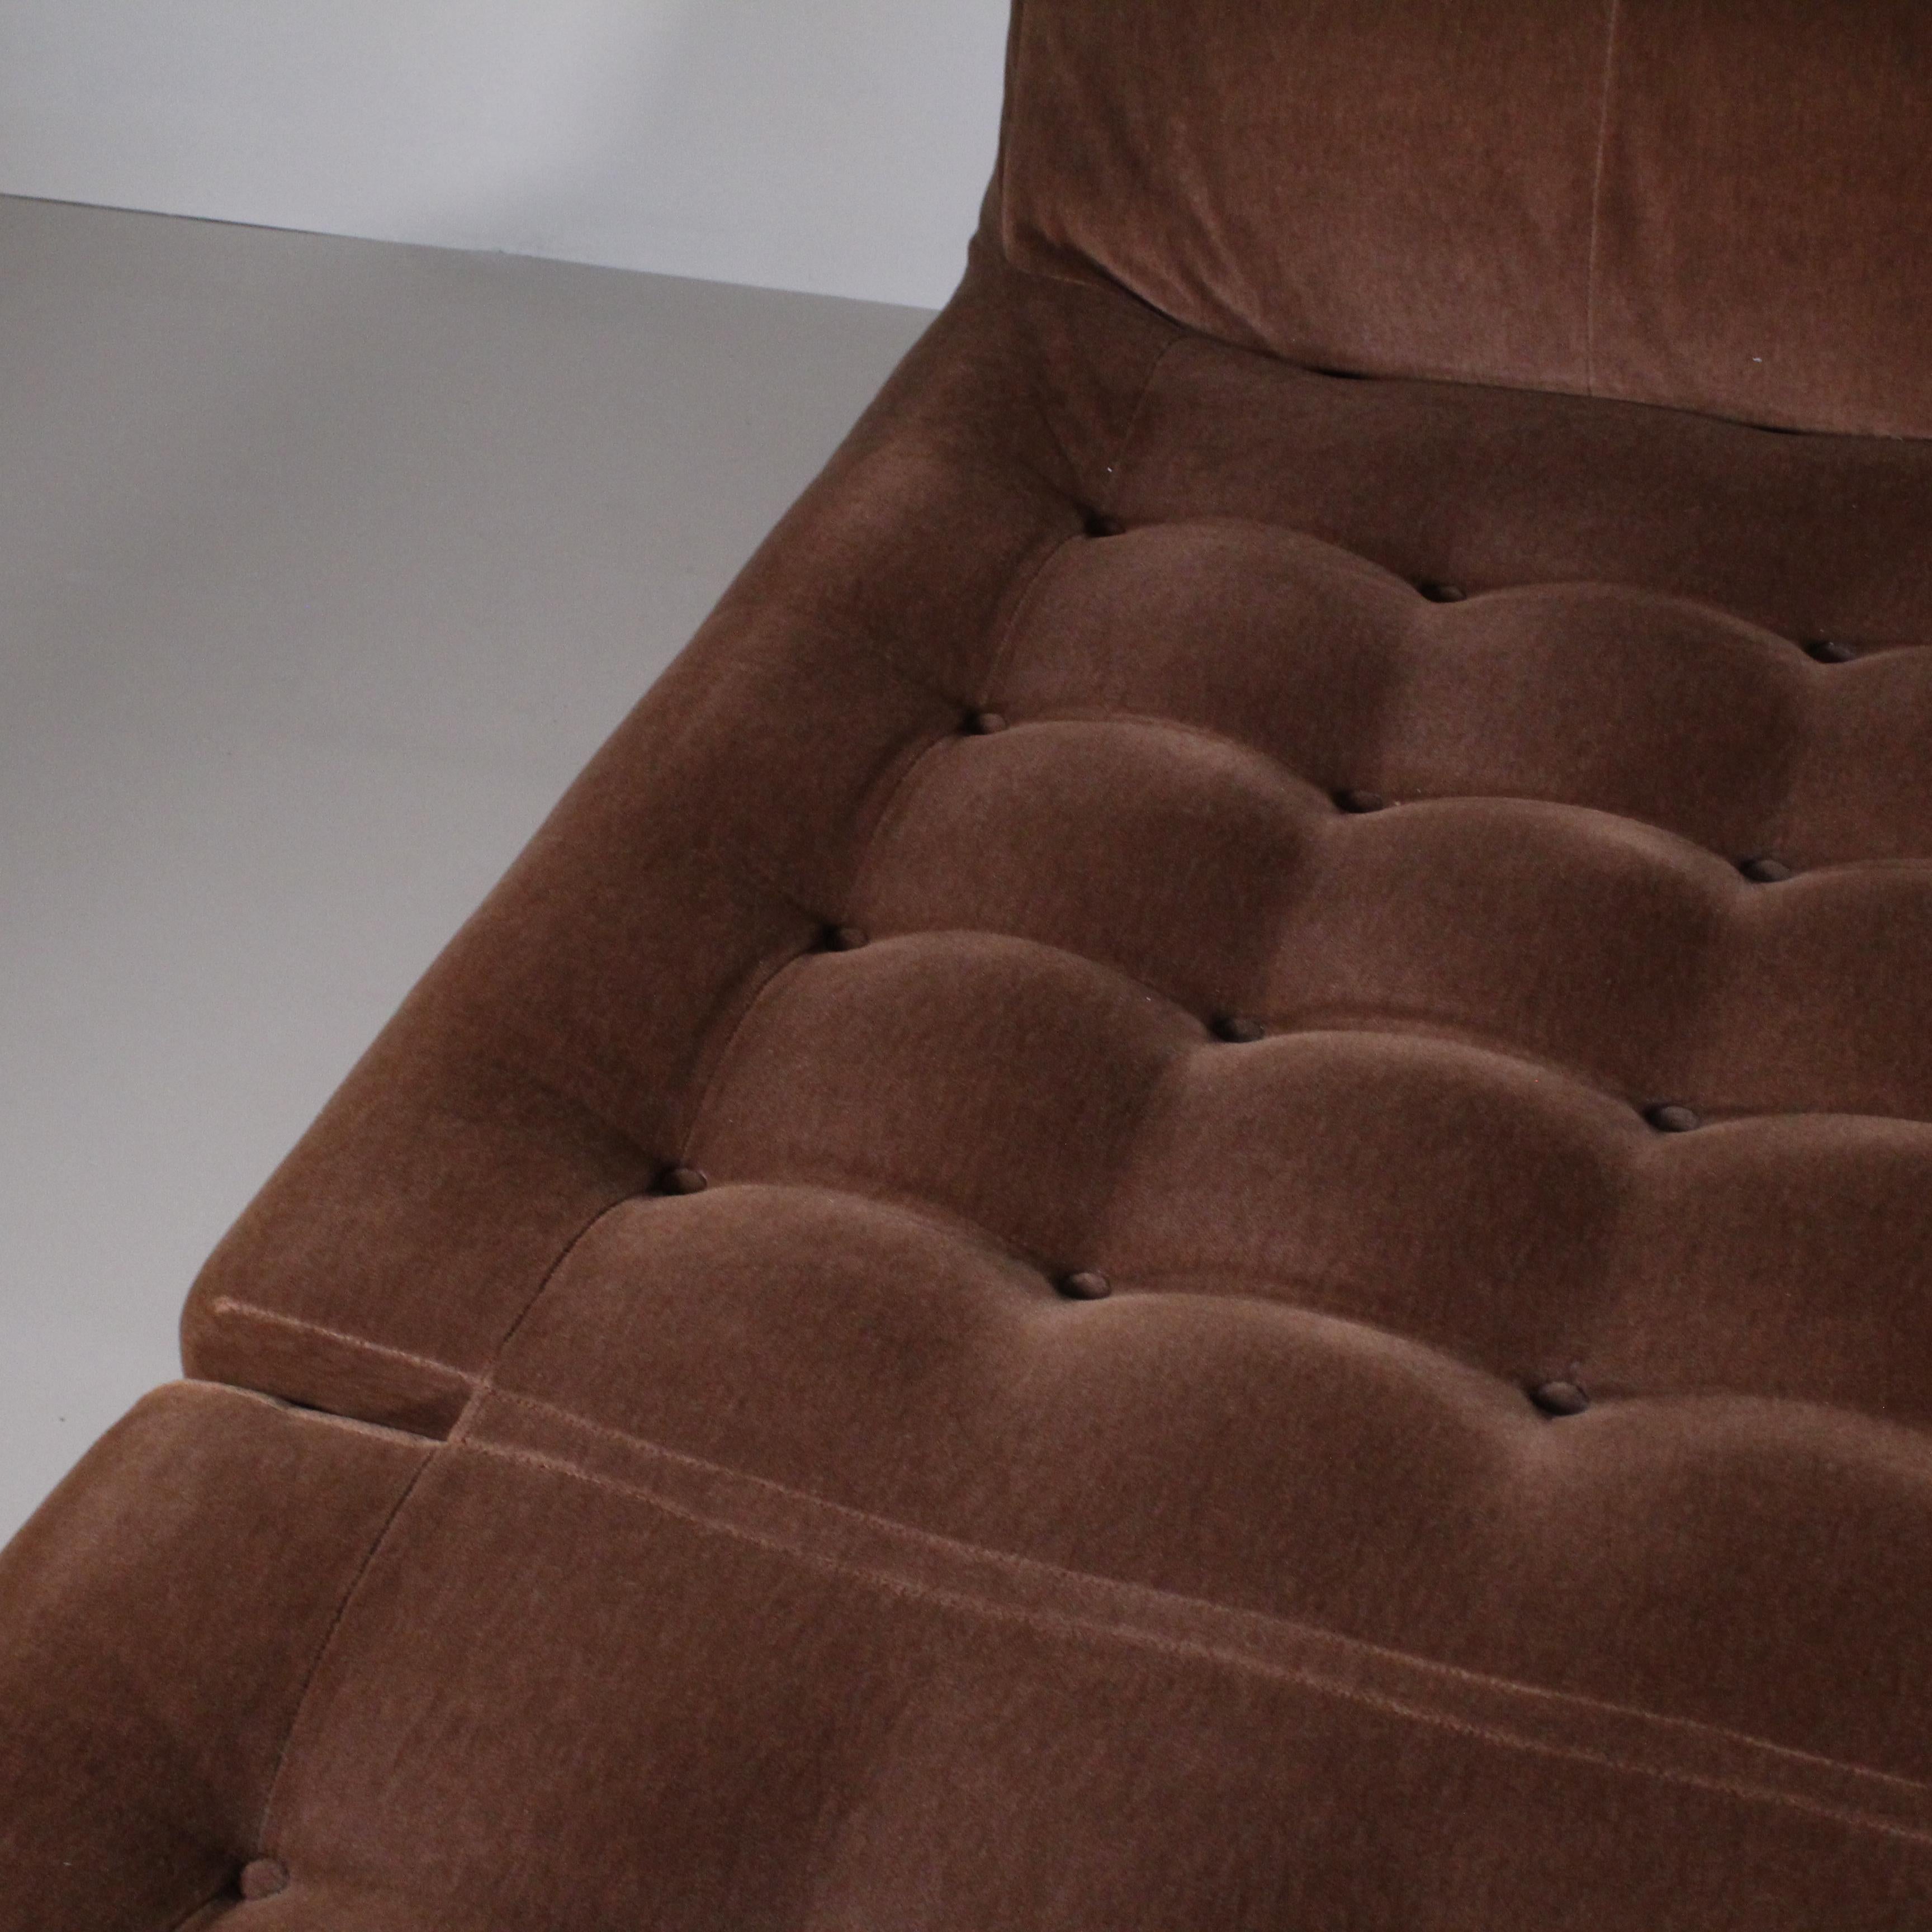 Das Bett Bamboletto gehört zur Kollektion Le Bambole, einem Entwurf von Mario Bellini aus dem Jahr 1972, der mit der Einführung dieses exklusiven Modells in die Kollektion seinen 50-jährigen Erfolg mit B&B Italia feiert. Mehrfach ausgezeichnet und